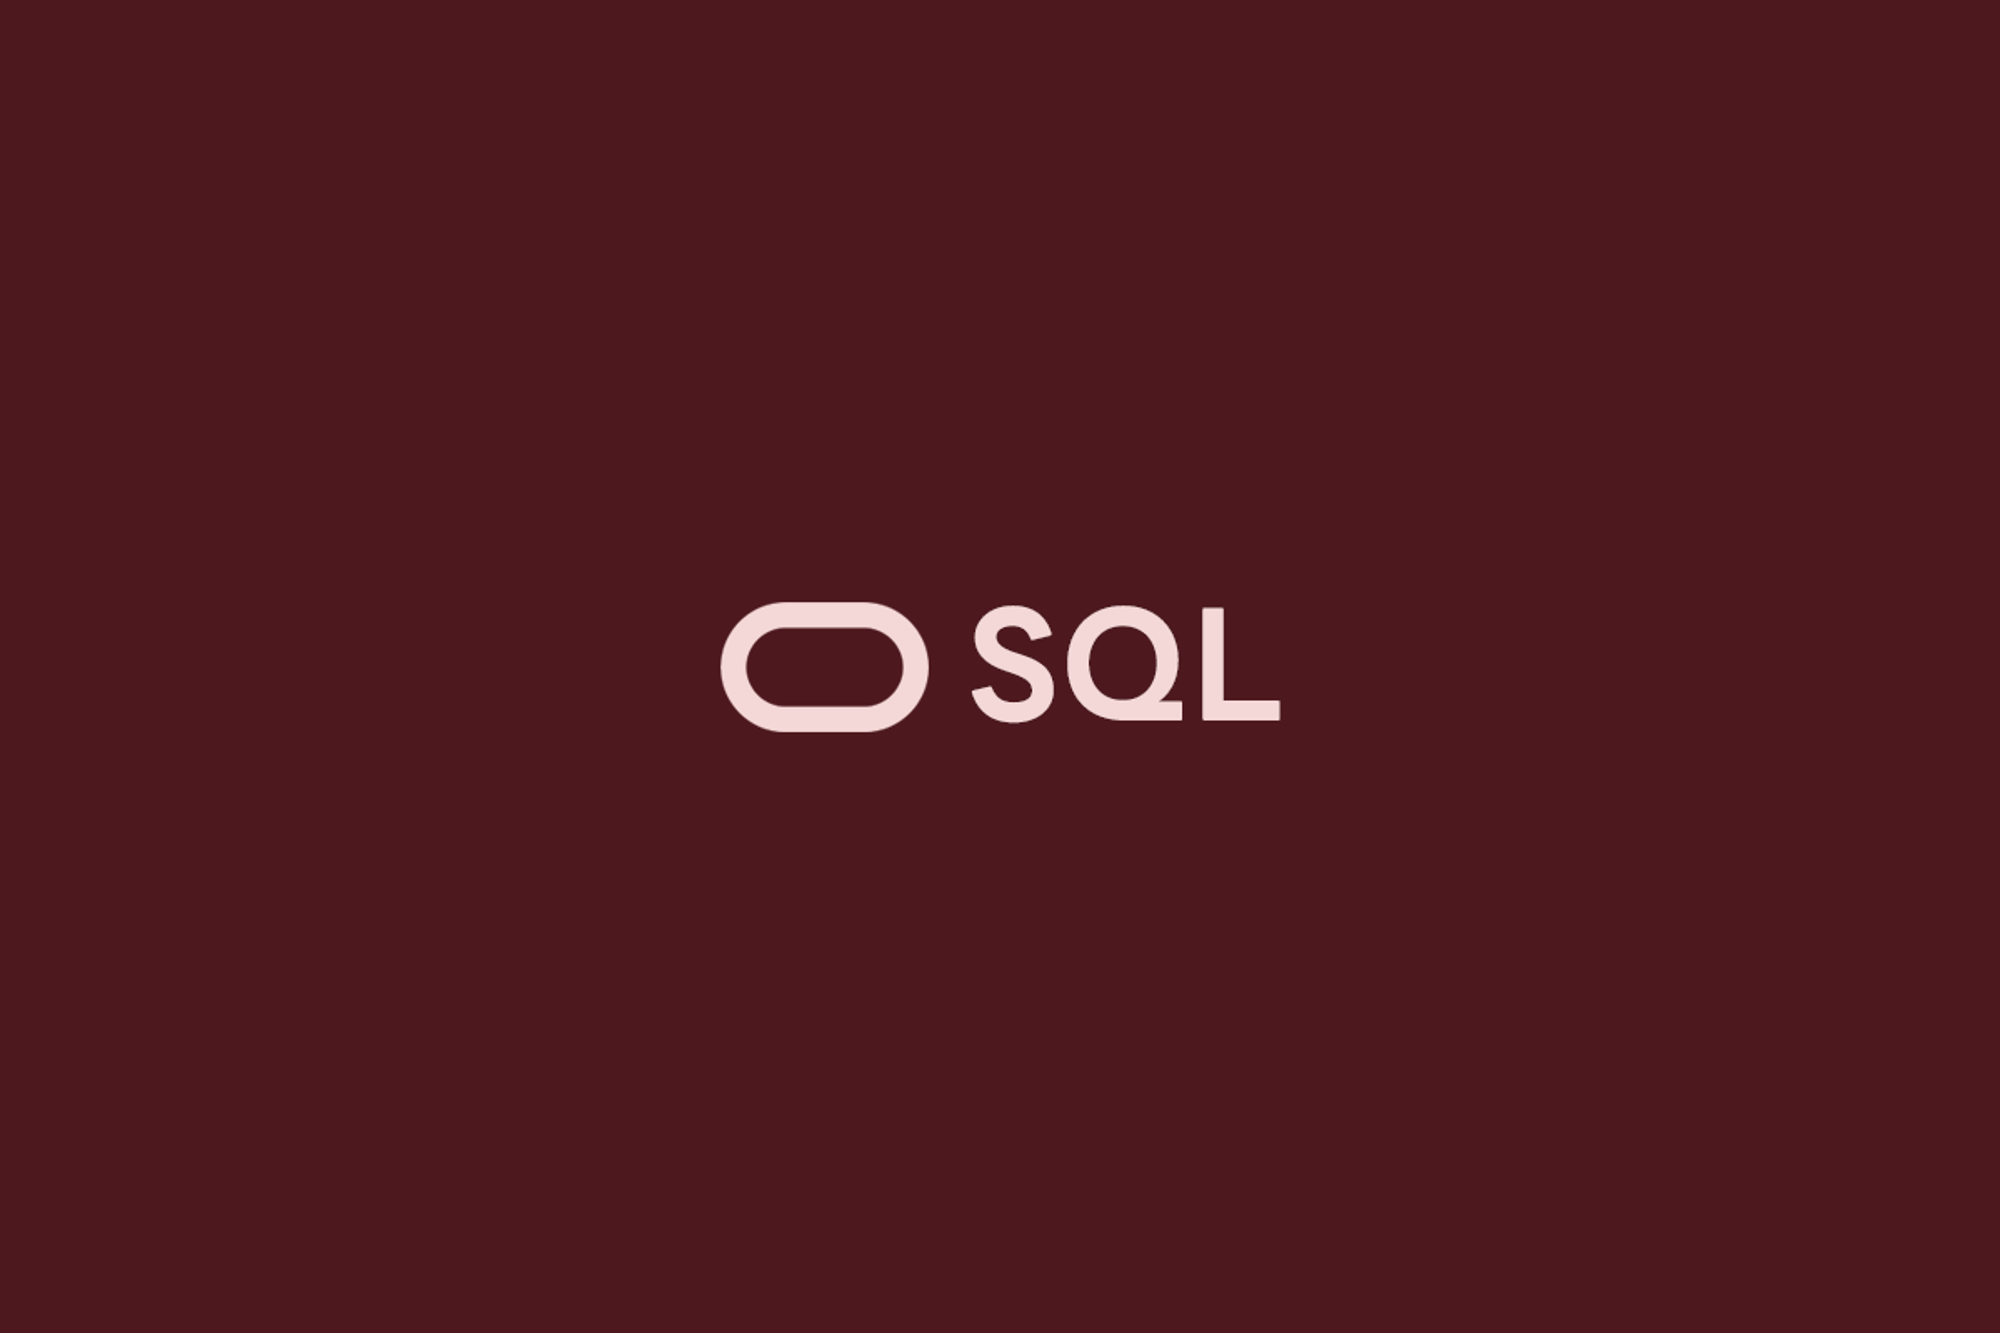 오라클 SQL (1) - 원하는 데이터를 검색하기